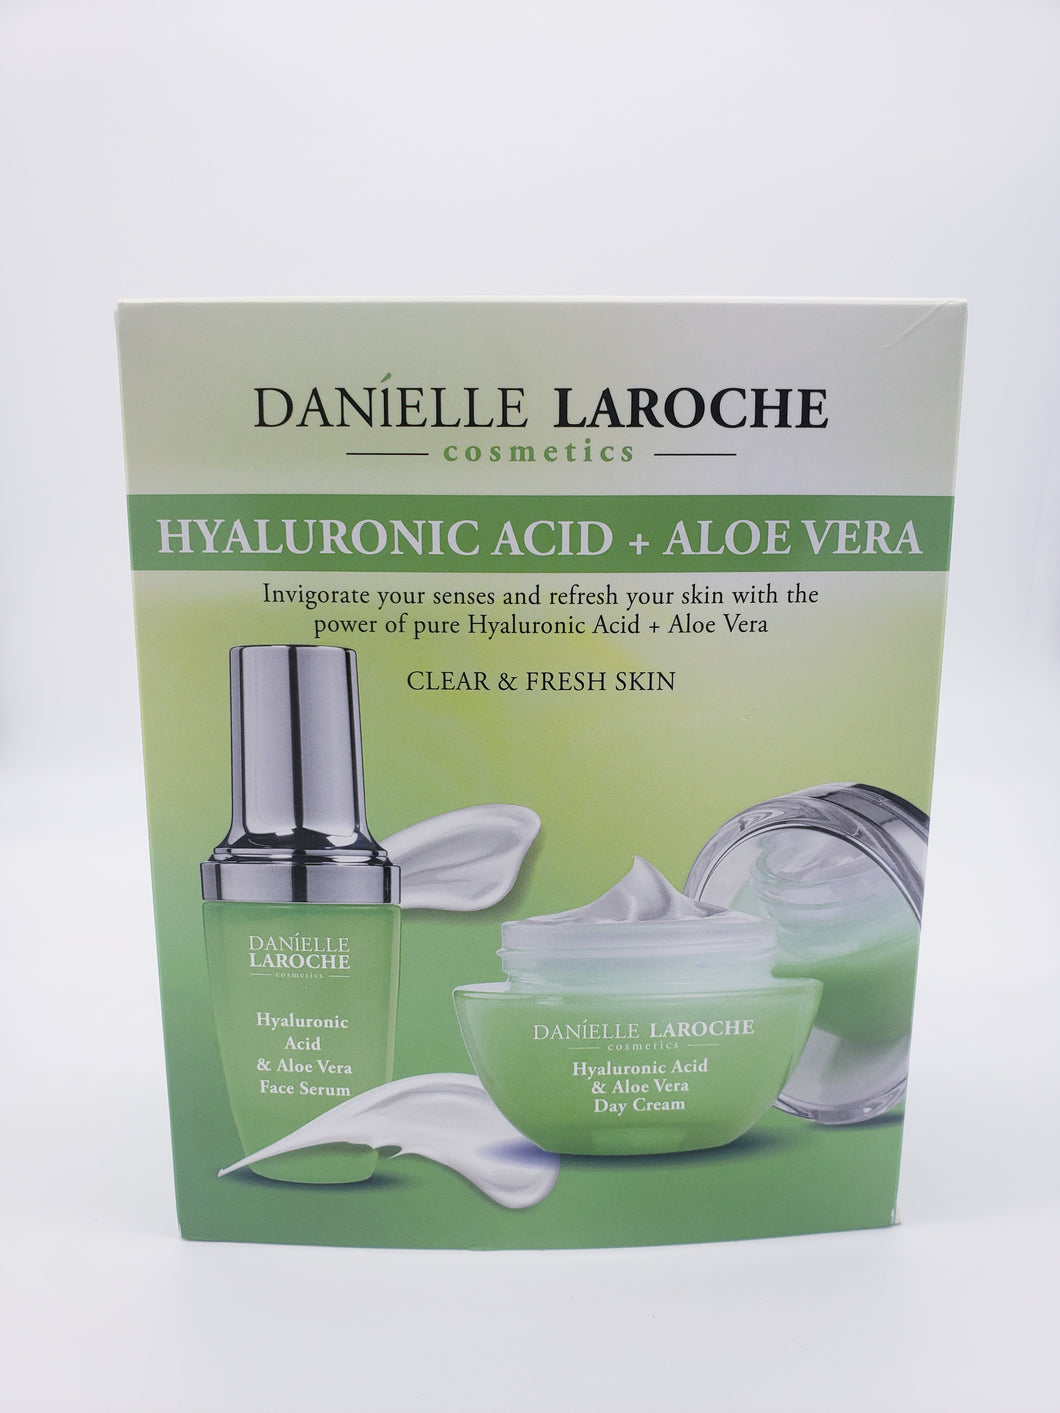 Danielle Laroche Hyaluronic Acid and Aloe Vera Skincare Combo